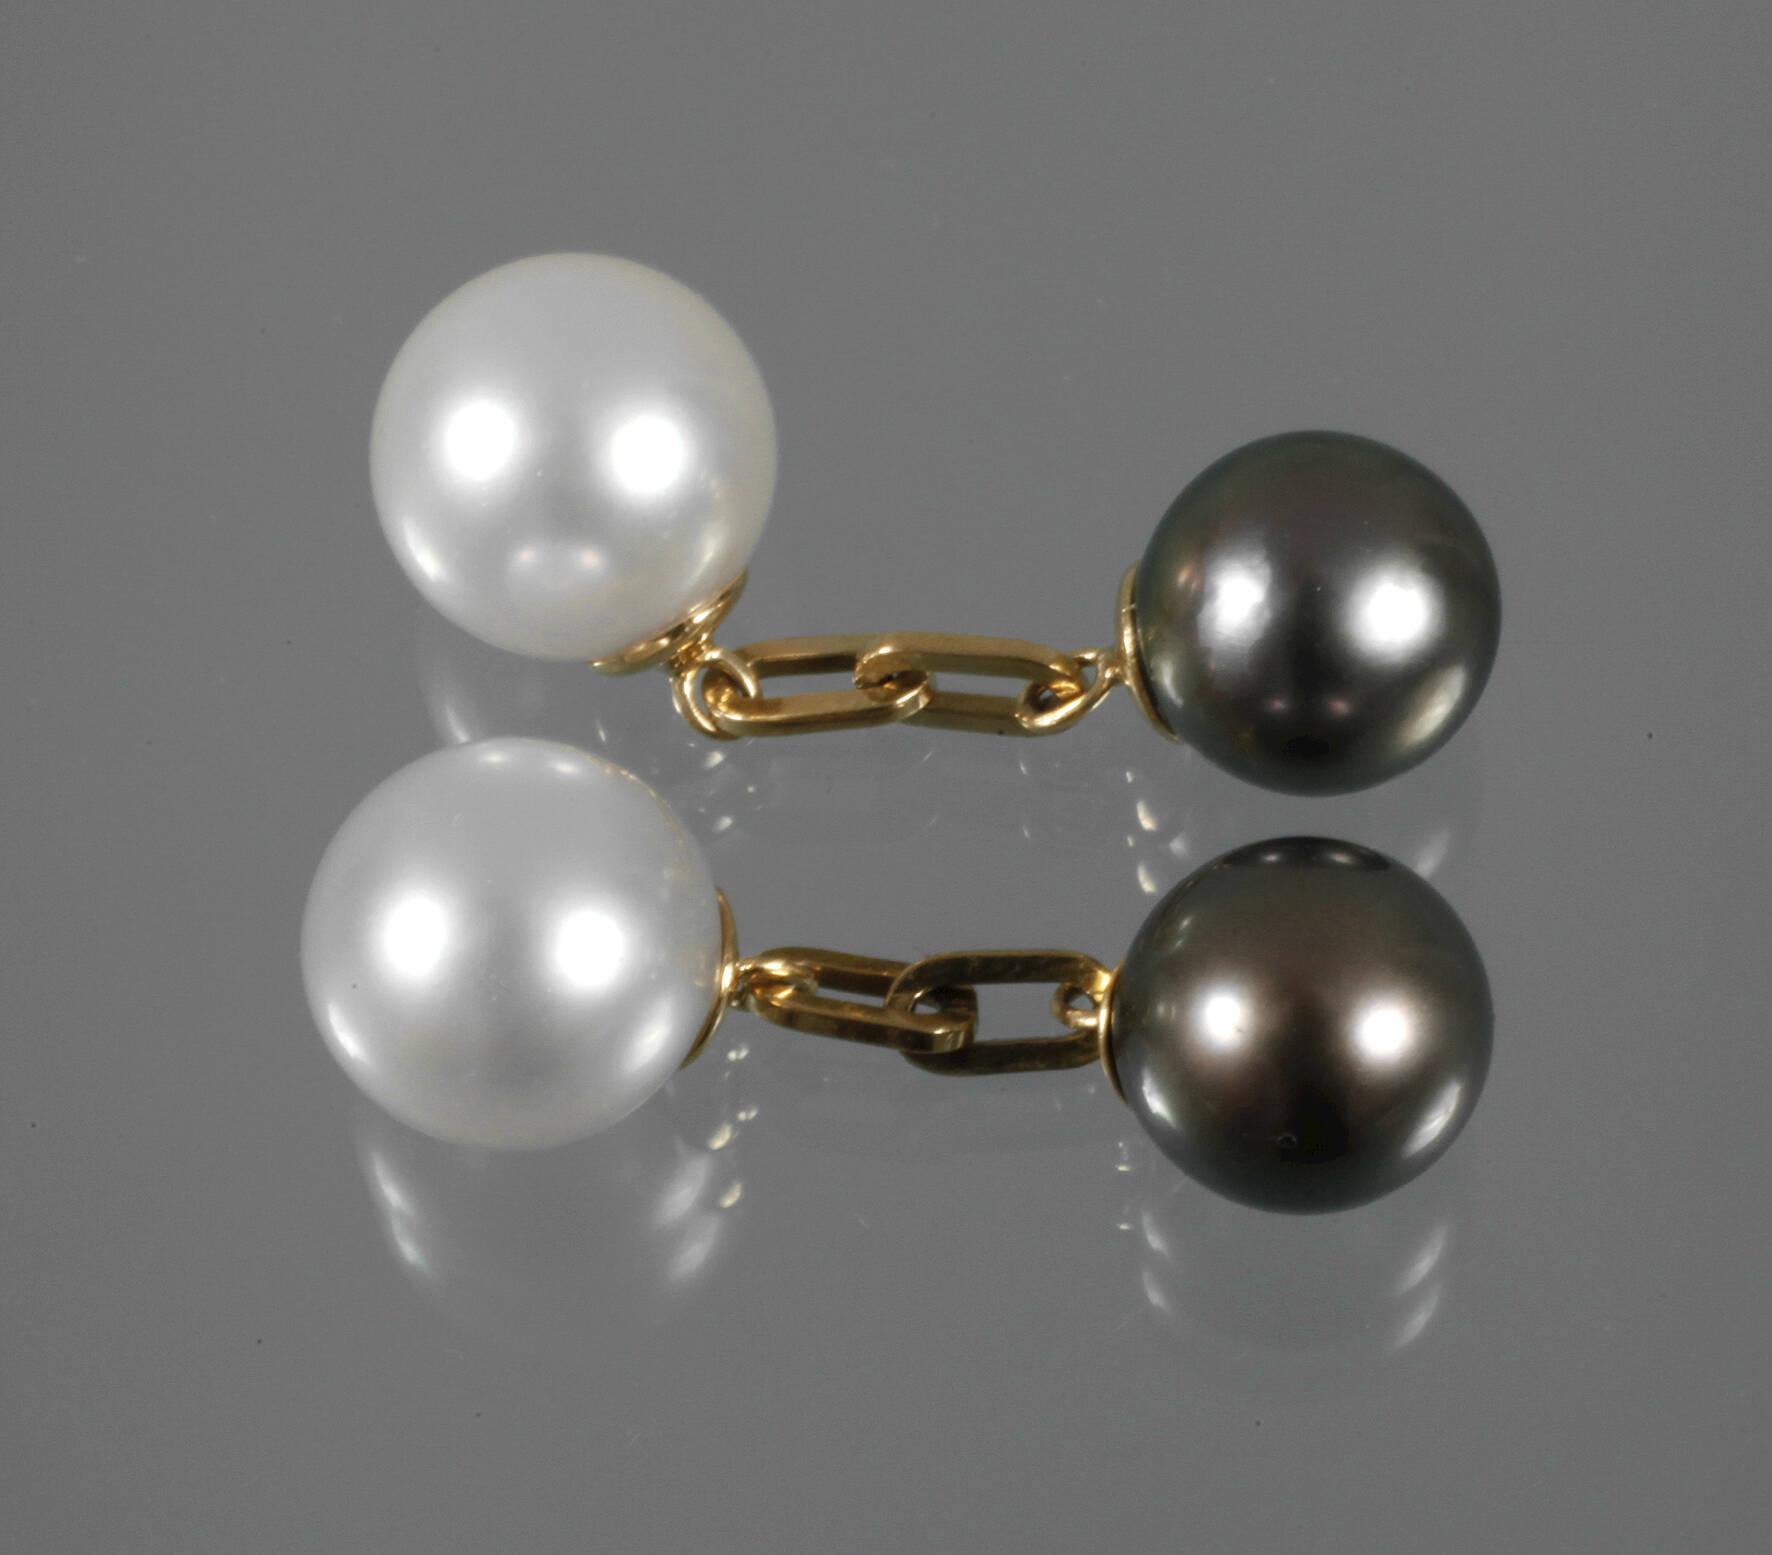 Paar Manschettenknöpfe mit Perlen